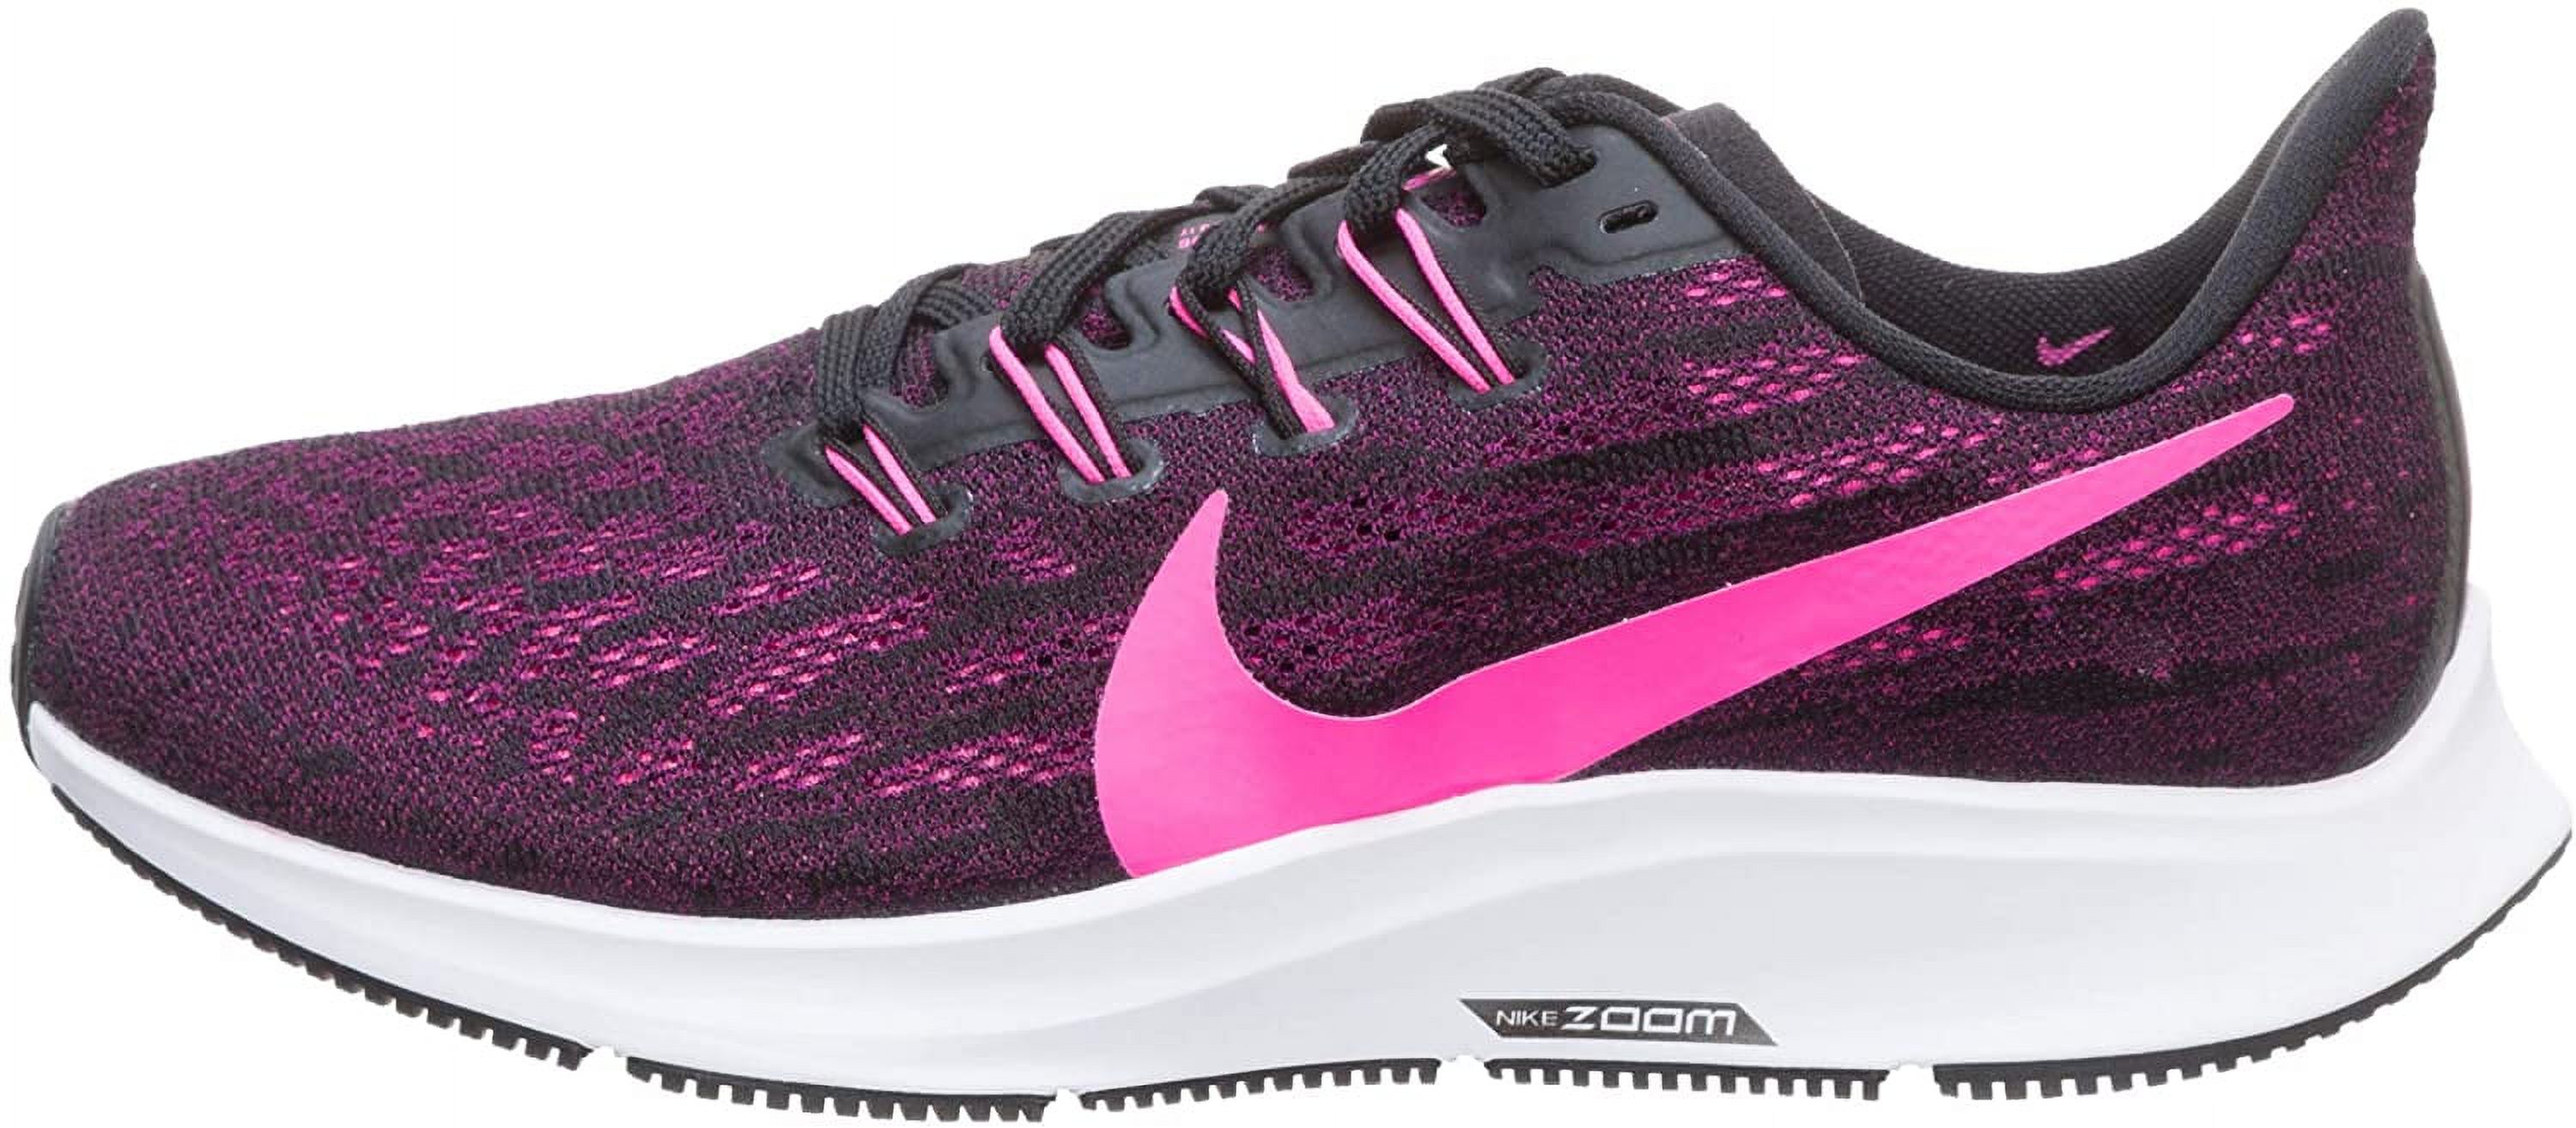 Nike Women's Air Zoom Pegasus 36 Running Shoe, Black/Pink/Berry, 8.5 B(M) US - image 5 of 7